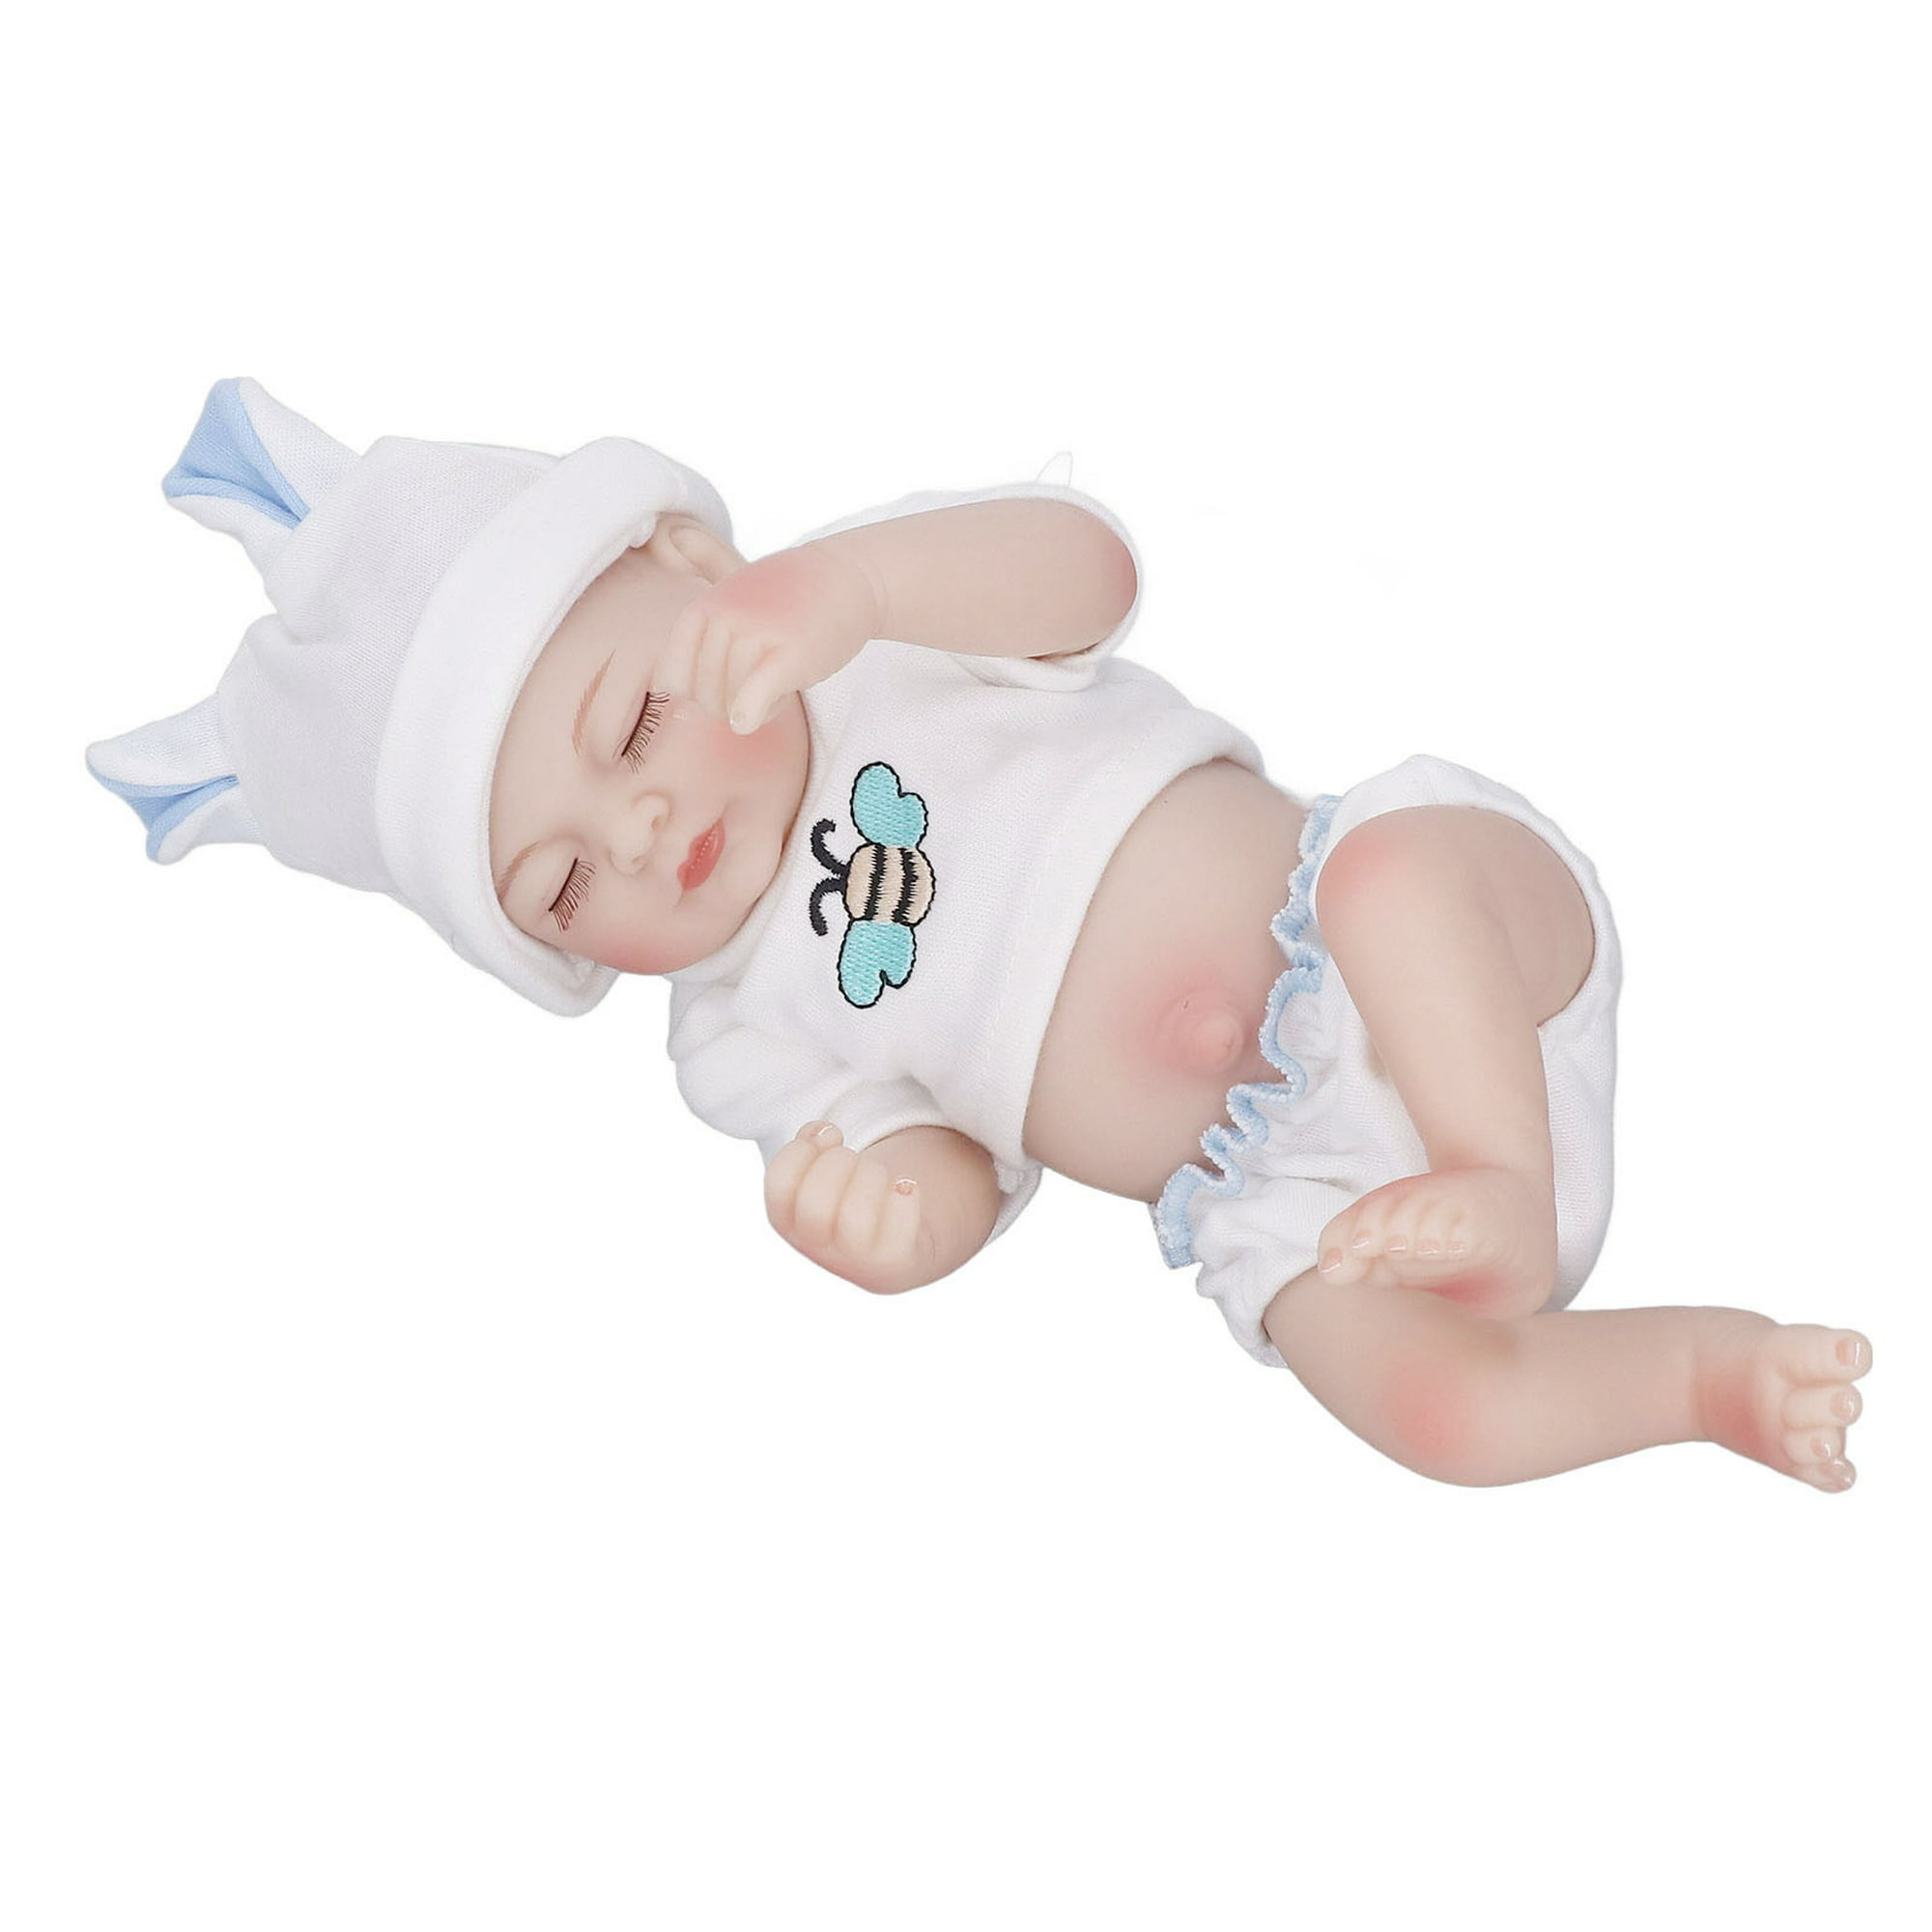 55cm 22 pulgadas silicona Reborn Baby Simulation Doll Juguete Recién nacido  Lifelike Girl